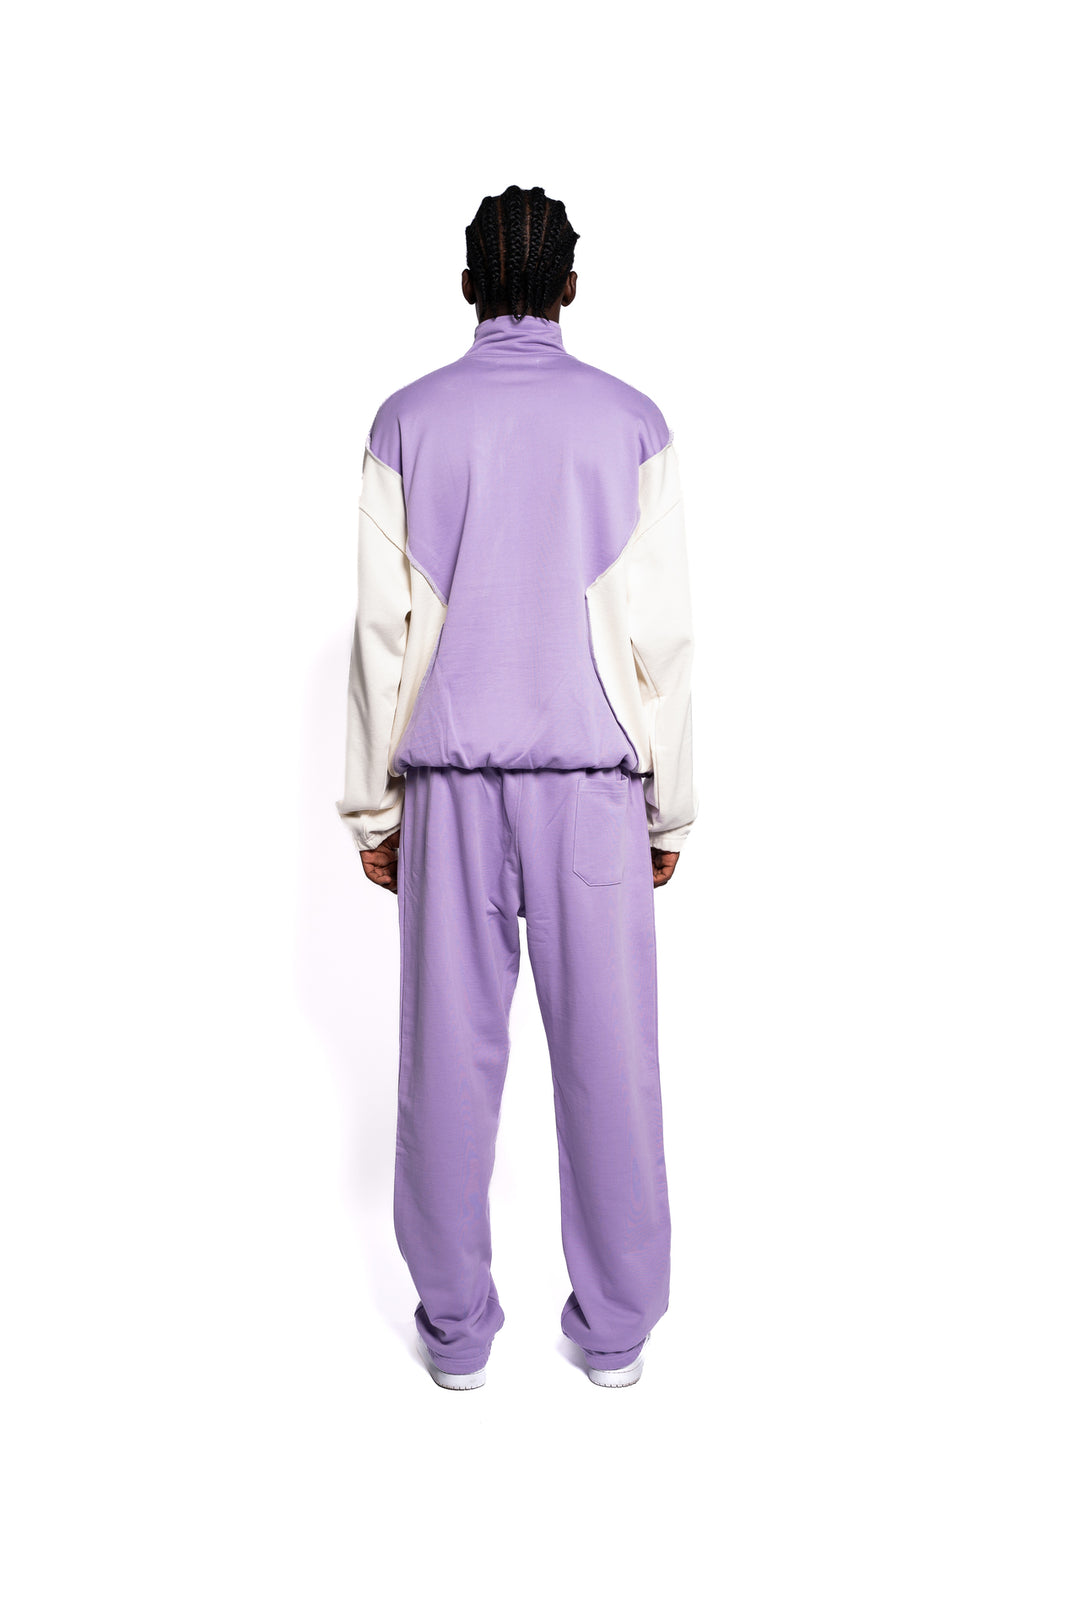 Rückansicht des Decider Streetwear-Ensembles, Hoodie und Sweatpants in Pastel Lila, subtile Logo-Highlights, getragen von einem männlichen Model, für einen coolen und lässigen Look.